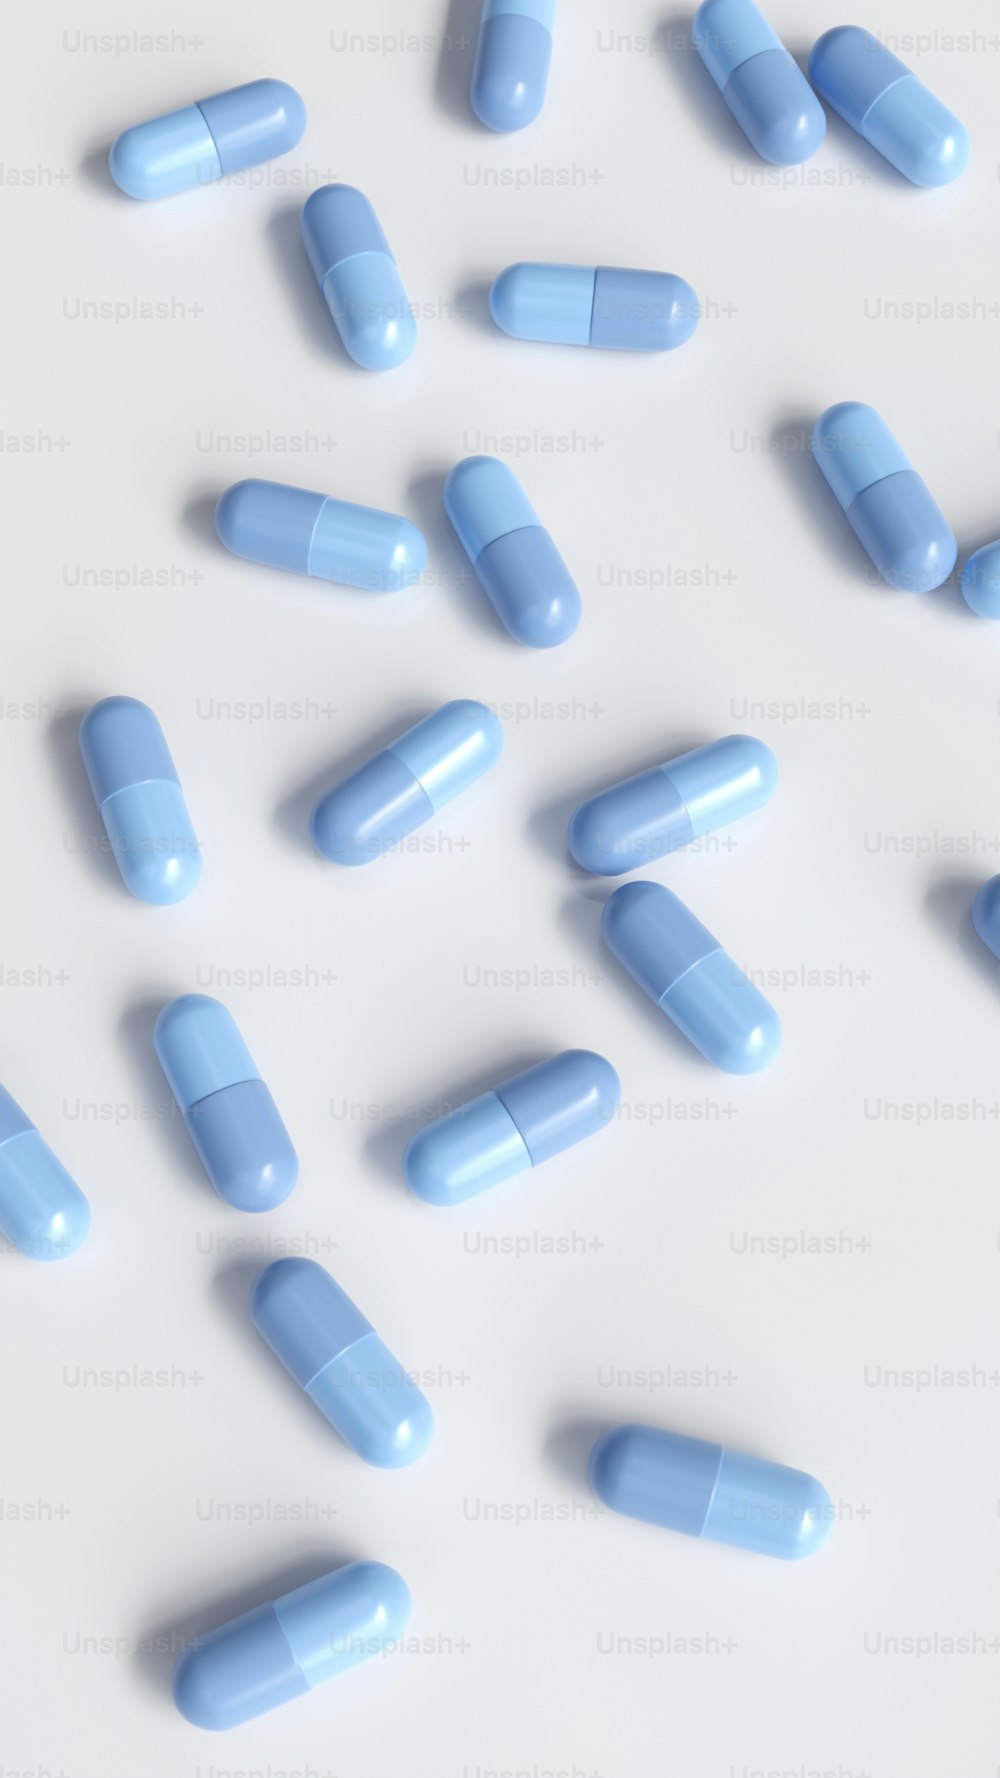 Las píldoras azules están dispersas sobre una superficie blanca